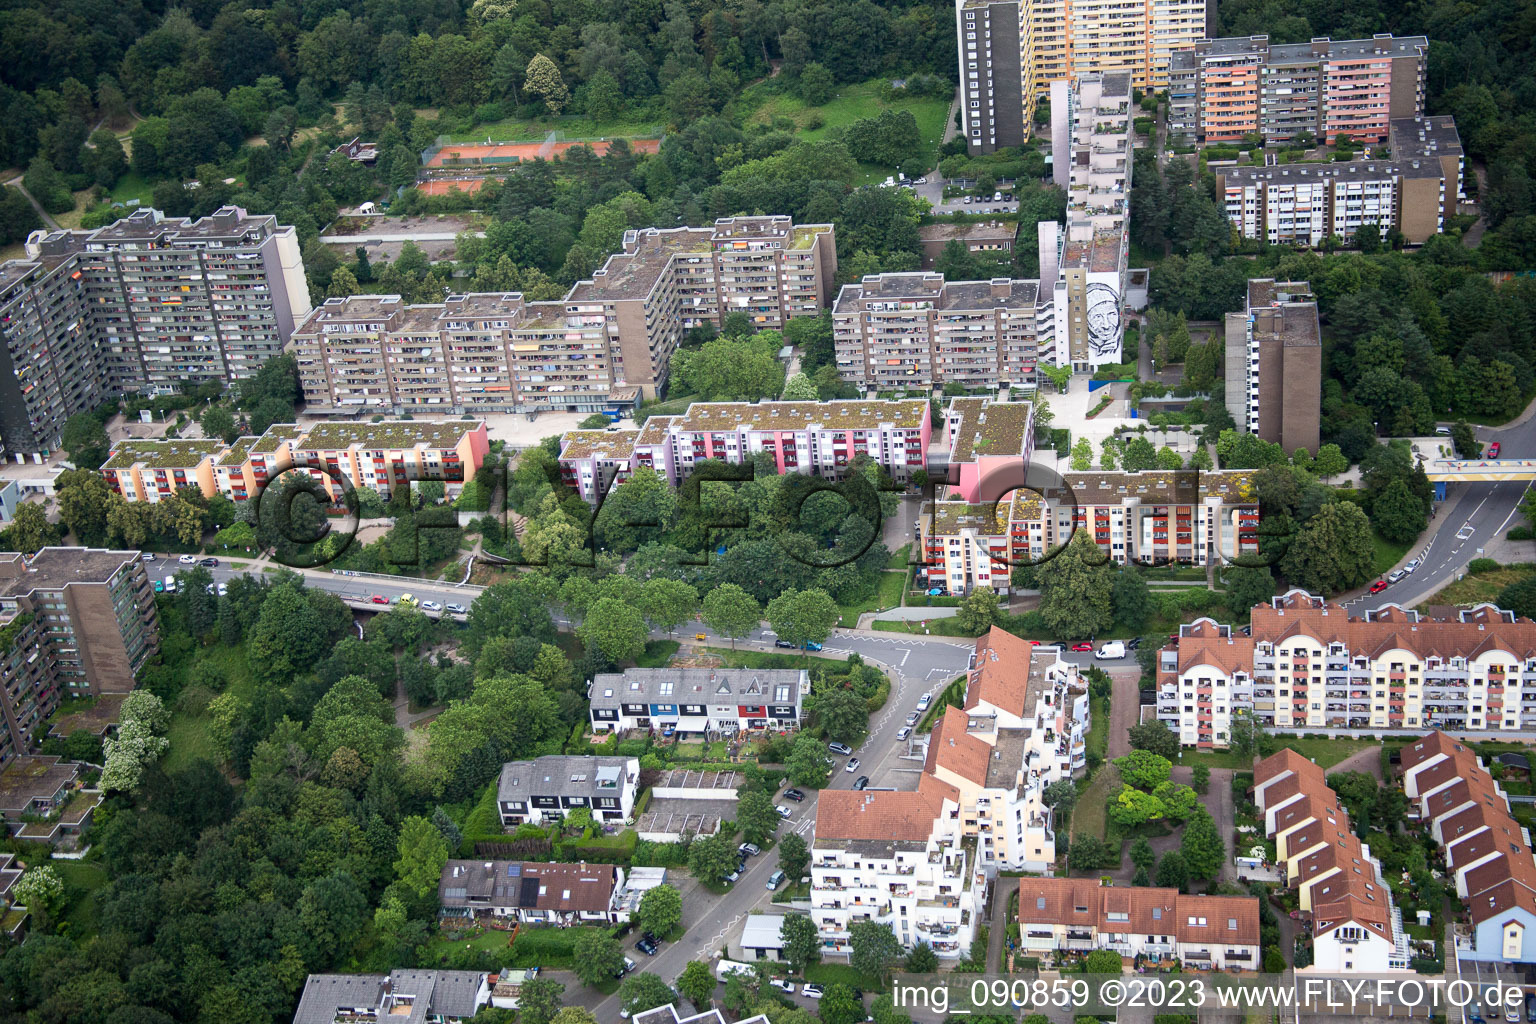 HD-Emmertsgrund à le quartier Emmertsgrund in Heidelberg dans le département Bade-Wurtemberg, Allemagne vue d'en haut